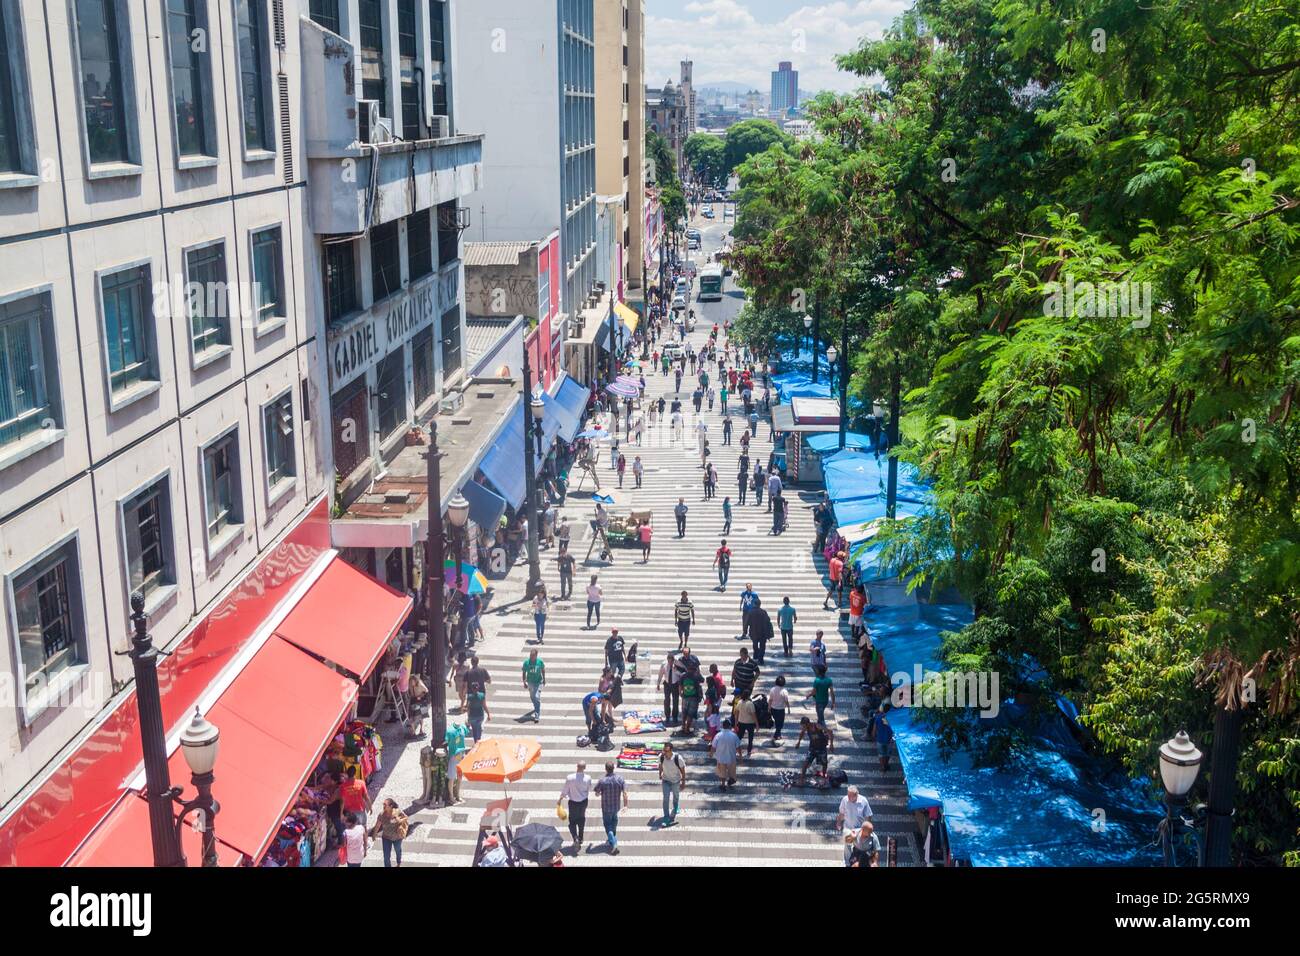 SAN PAOLO, BRASILE - 3 FEBBRAIO 2015: La gente cammina in una zona pedonale in via Rua General Carneiro a San Paolo. Foto Stock